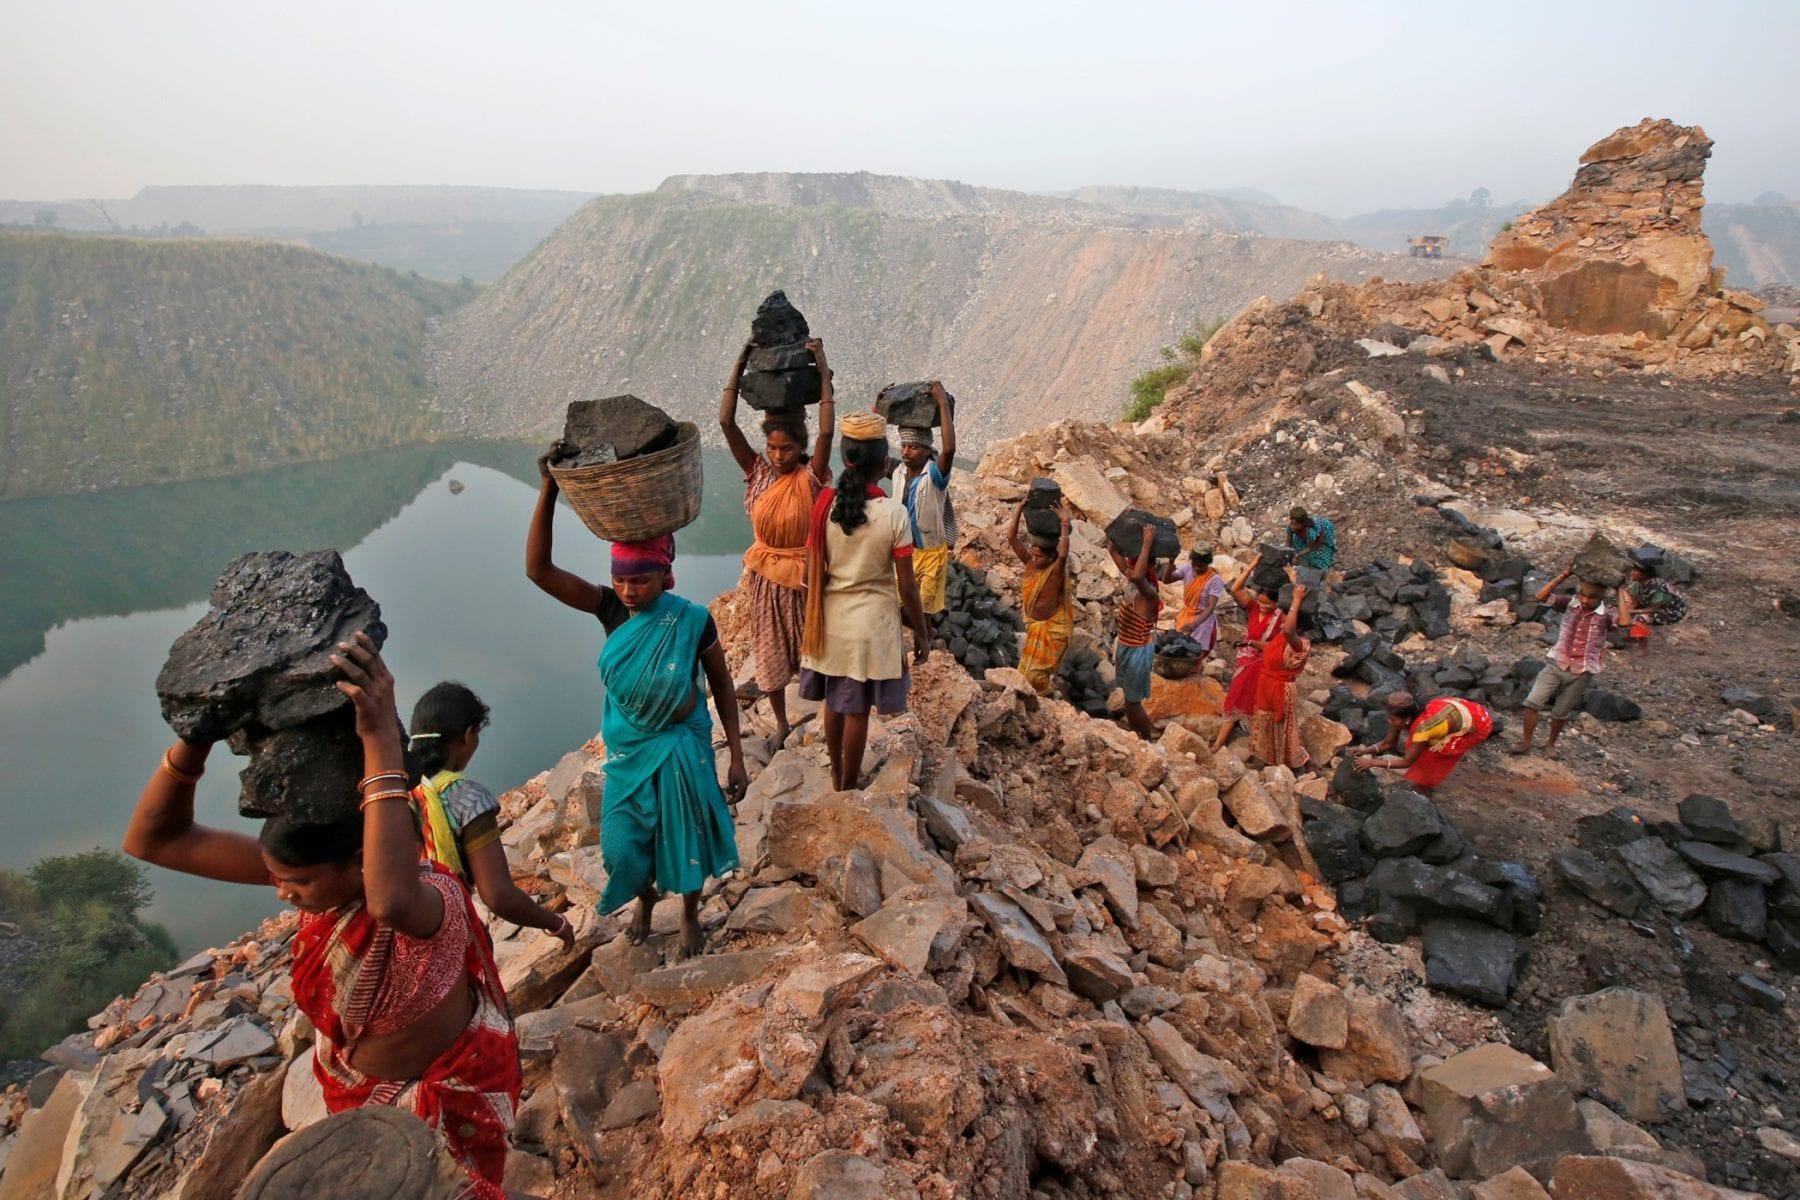 Coal miners - Eastern India 2013